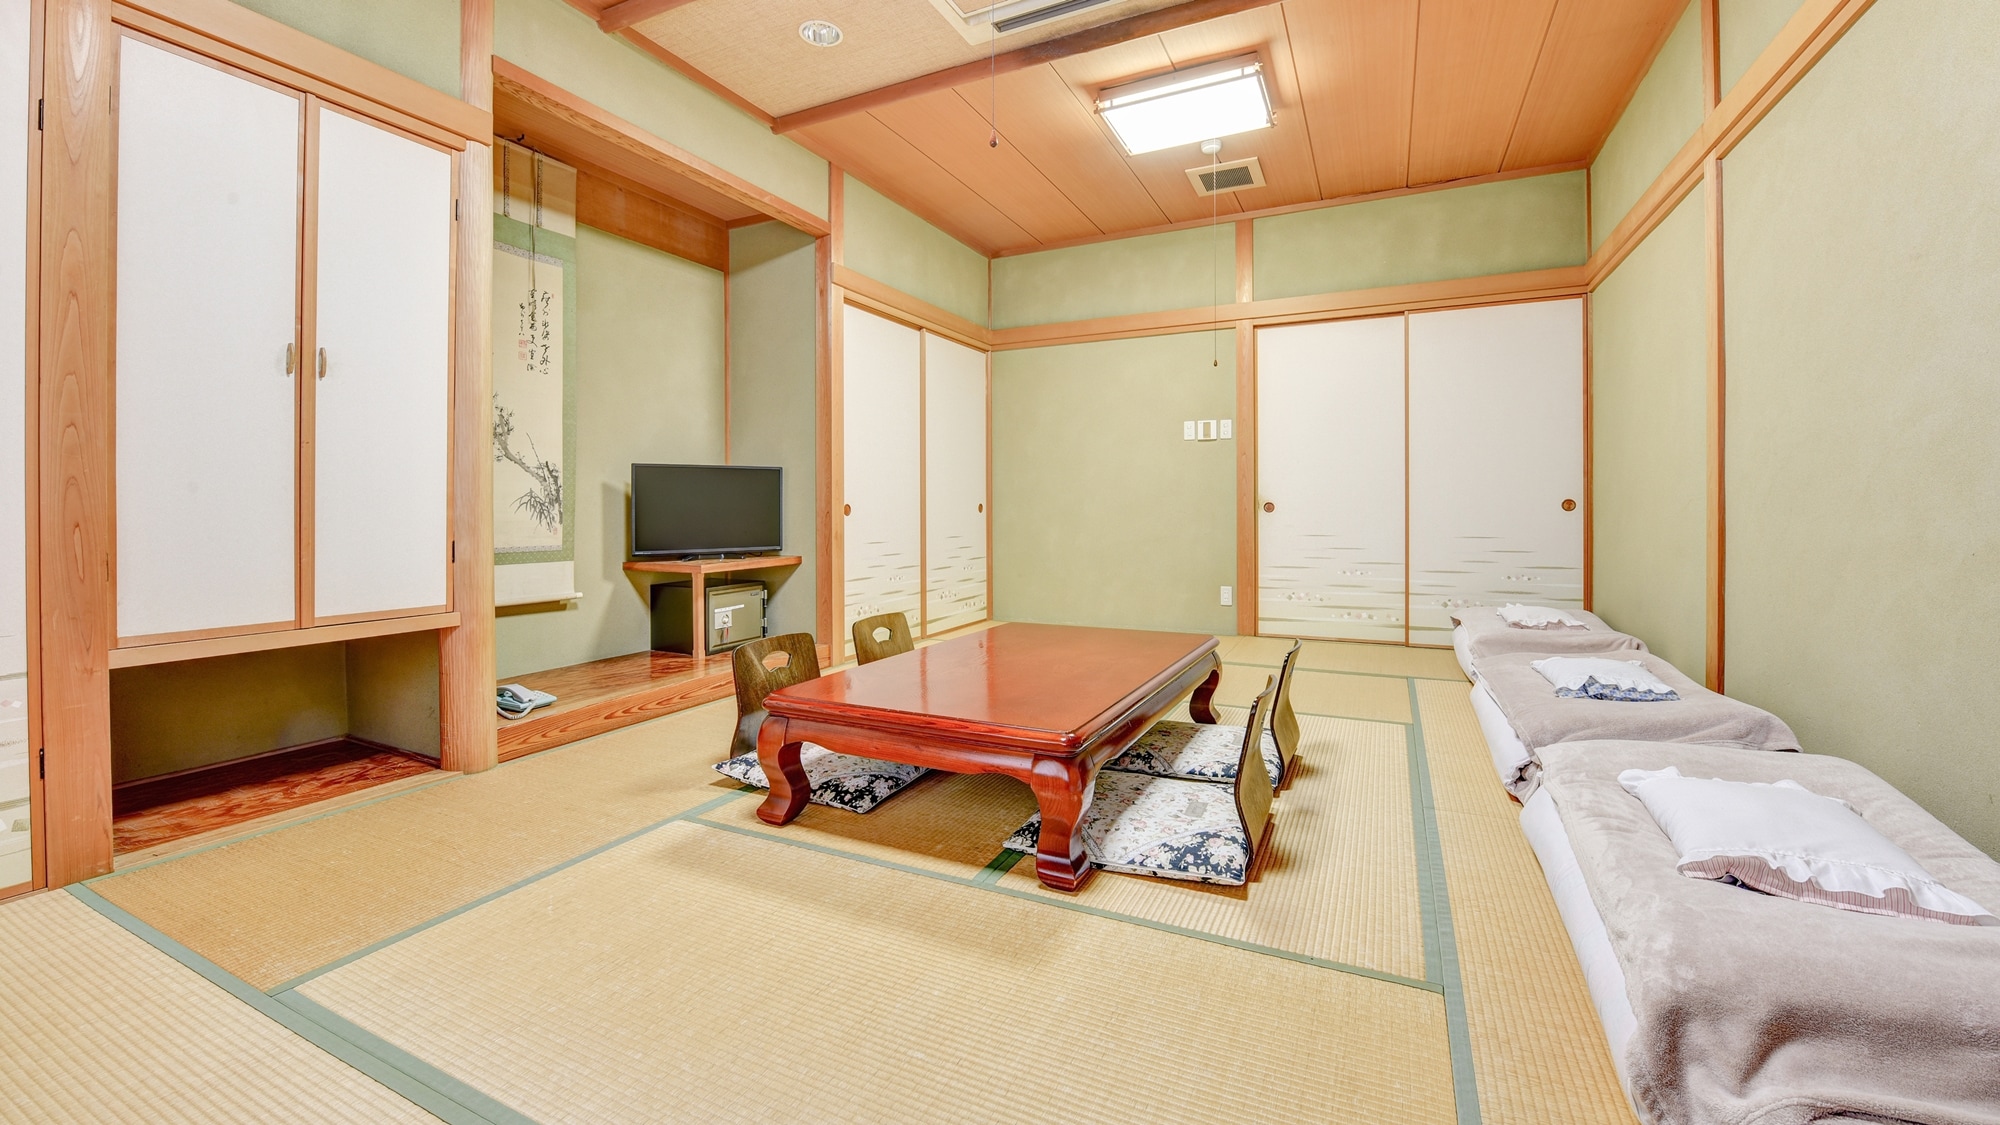 * 日式客房 12 張榻榻米 / 純日式客房擁有優雅和寧靜的氛圍。請在家庭或團體中度過輕鬆的時光。